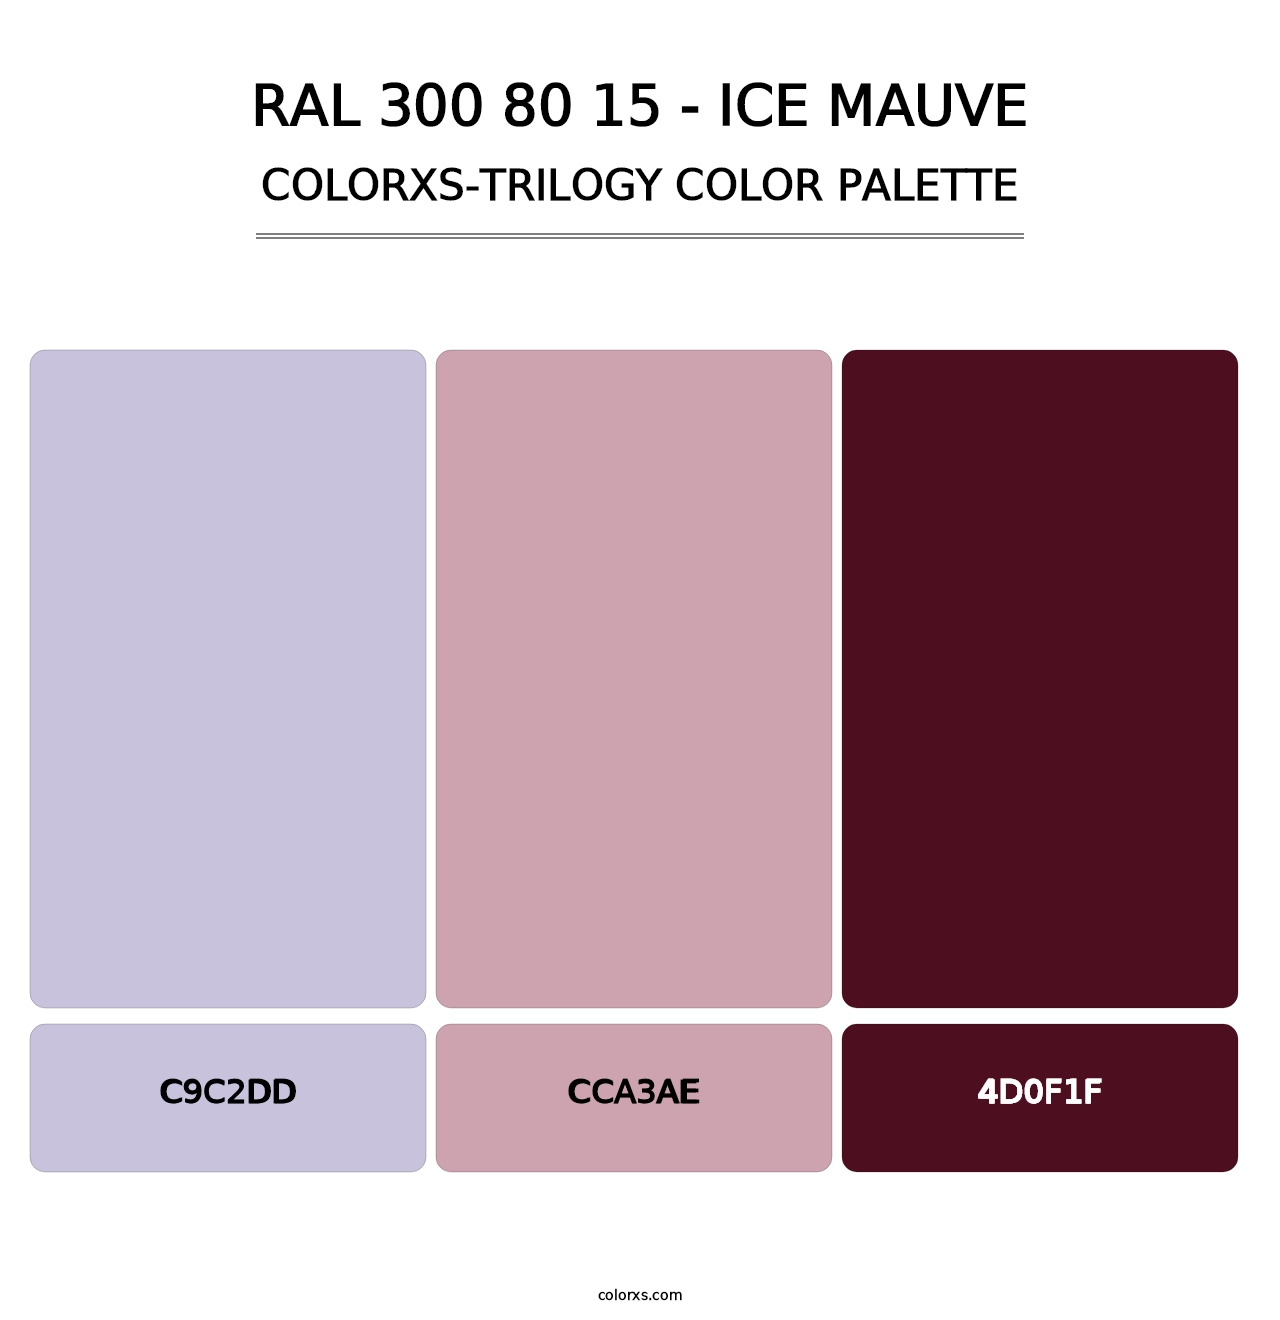 RAL 300 80 15 - Ice Mauve - Colorxs Trilogy Palette